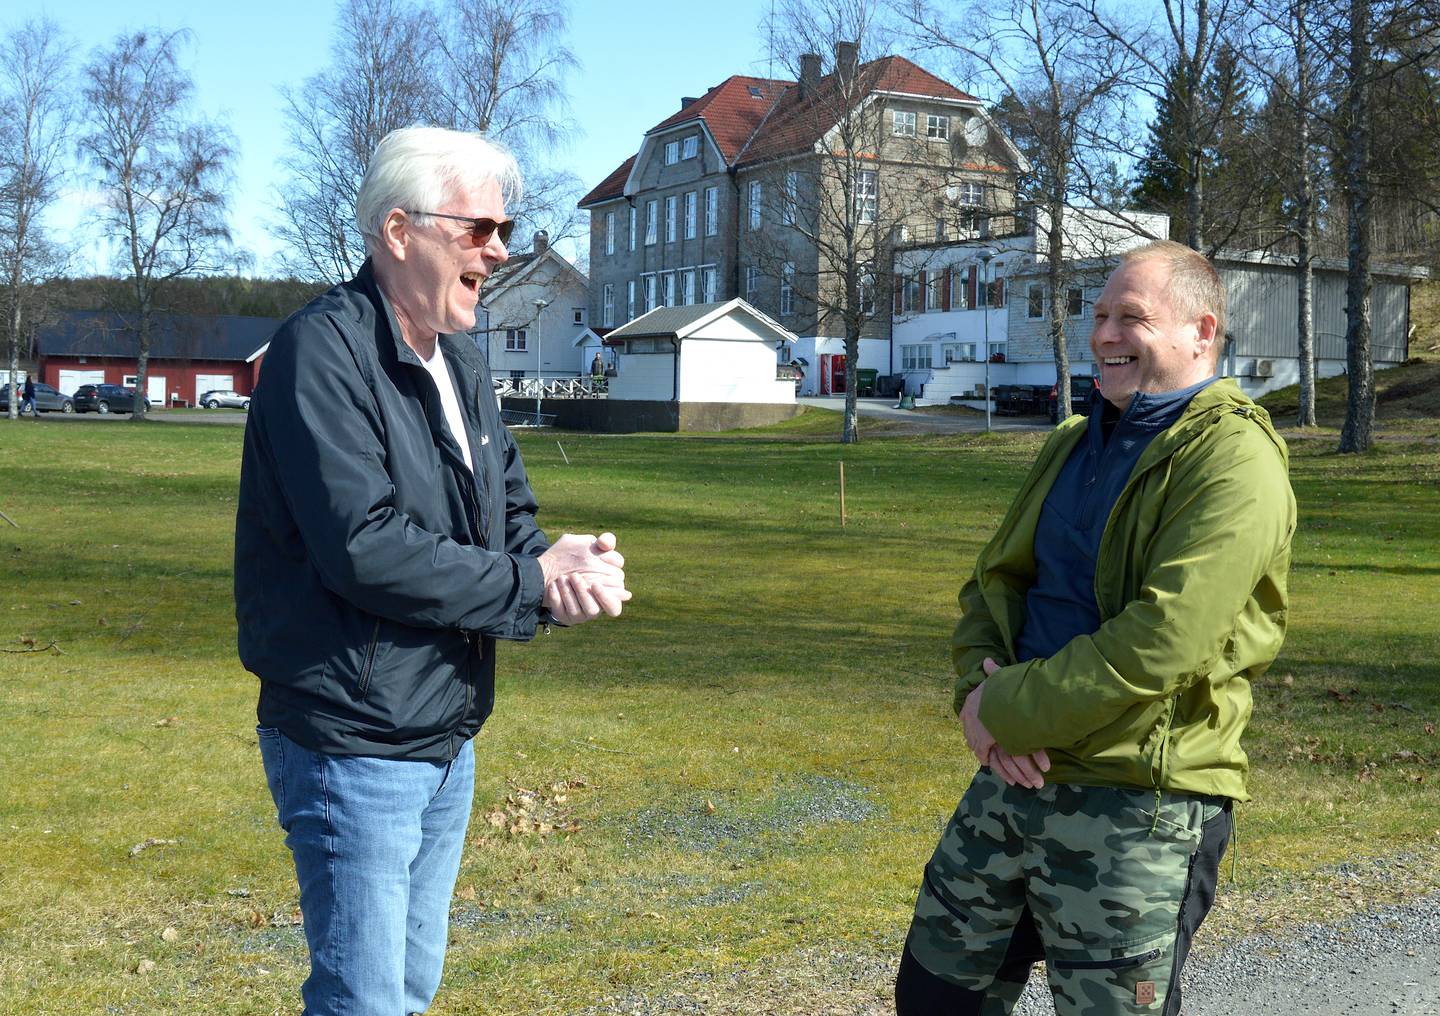 FÅR HJELP: Sten Jonny Espeland (til høyre) er glad for sjansen han får til å gå på bibelskolen på Varna, noe som hjelper ham ut av rusproblemene hans. Her er han i samtale med Morten Sæther, en av medelevene som ikke har rusbakgrunn